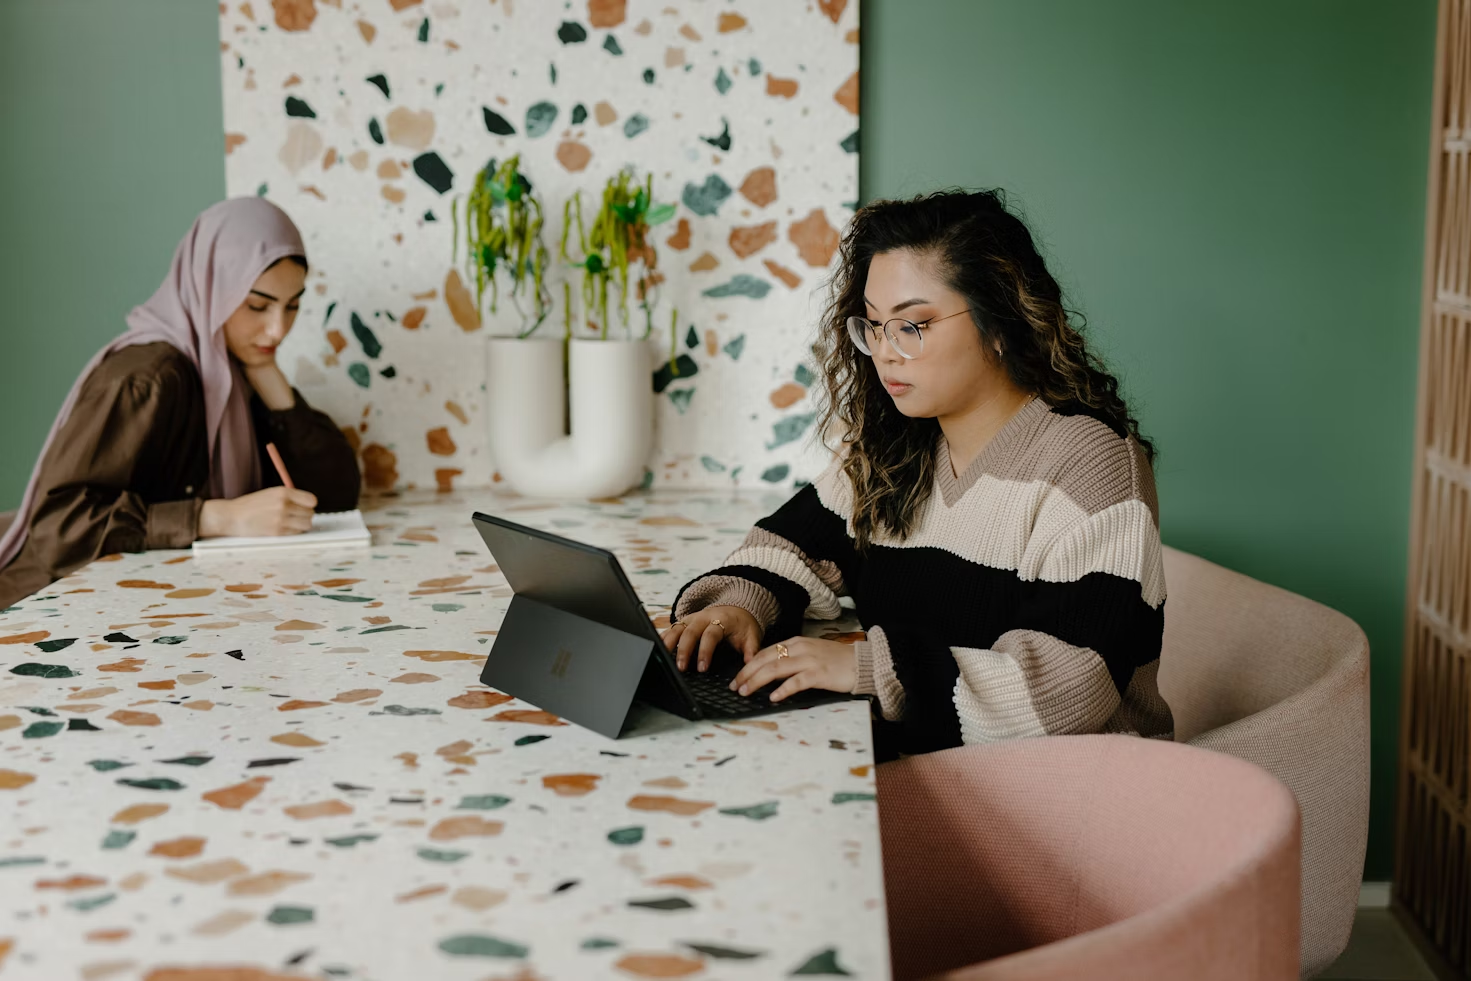 Deux femmes travaillant sur un ordinateur et écrivant dans un carnet assises à une table de réunion en pierres blanches vertes et roses